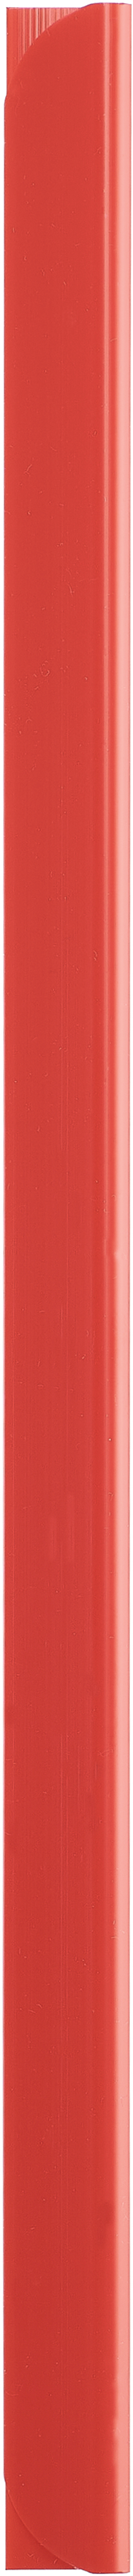 KOLMA Rail de serrage 3mm A4 10.746.04 rouge 25 pcs.